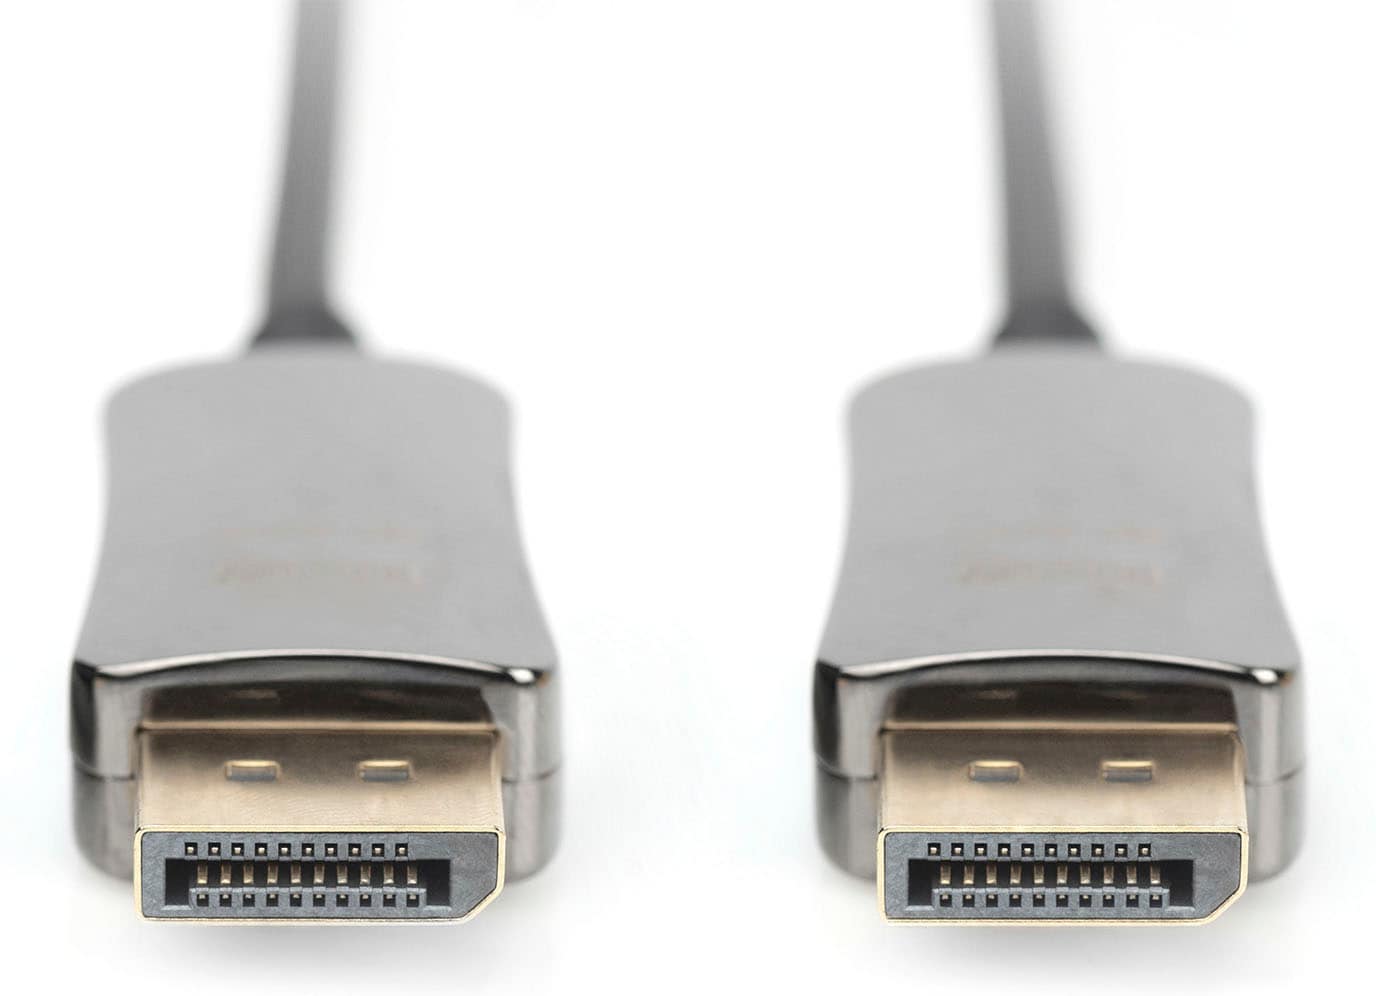 Digitus SAT-Kabel »DisplayPort™ AOC Hybrid Glasfaserkabel, UHD 8K«,  DisplayPort, 1500 cm ➥ 3 Jahre XXL Garantie | UNIVERSAL